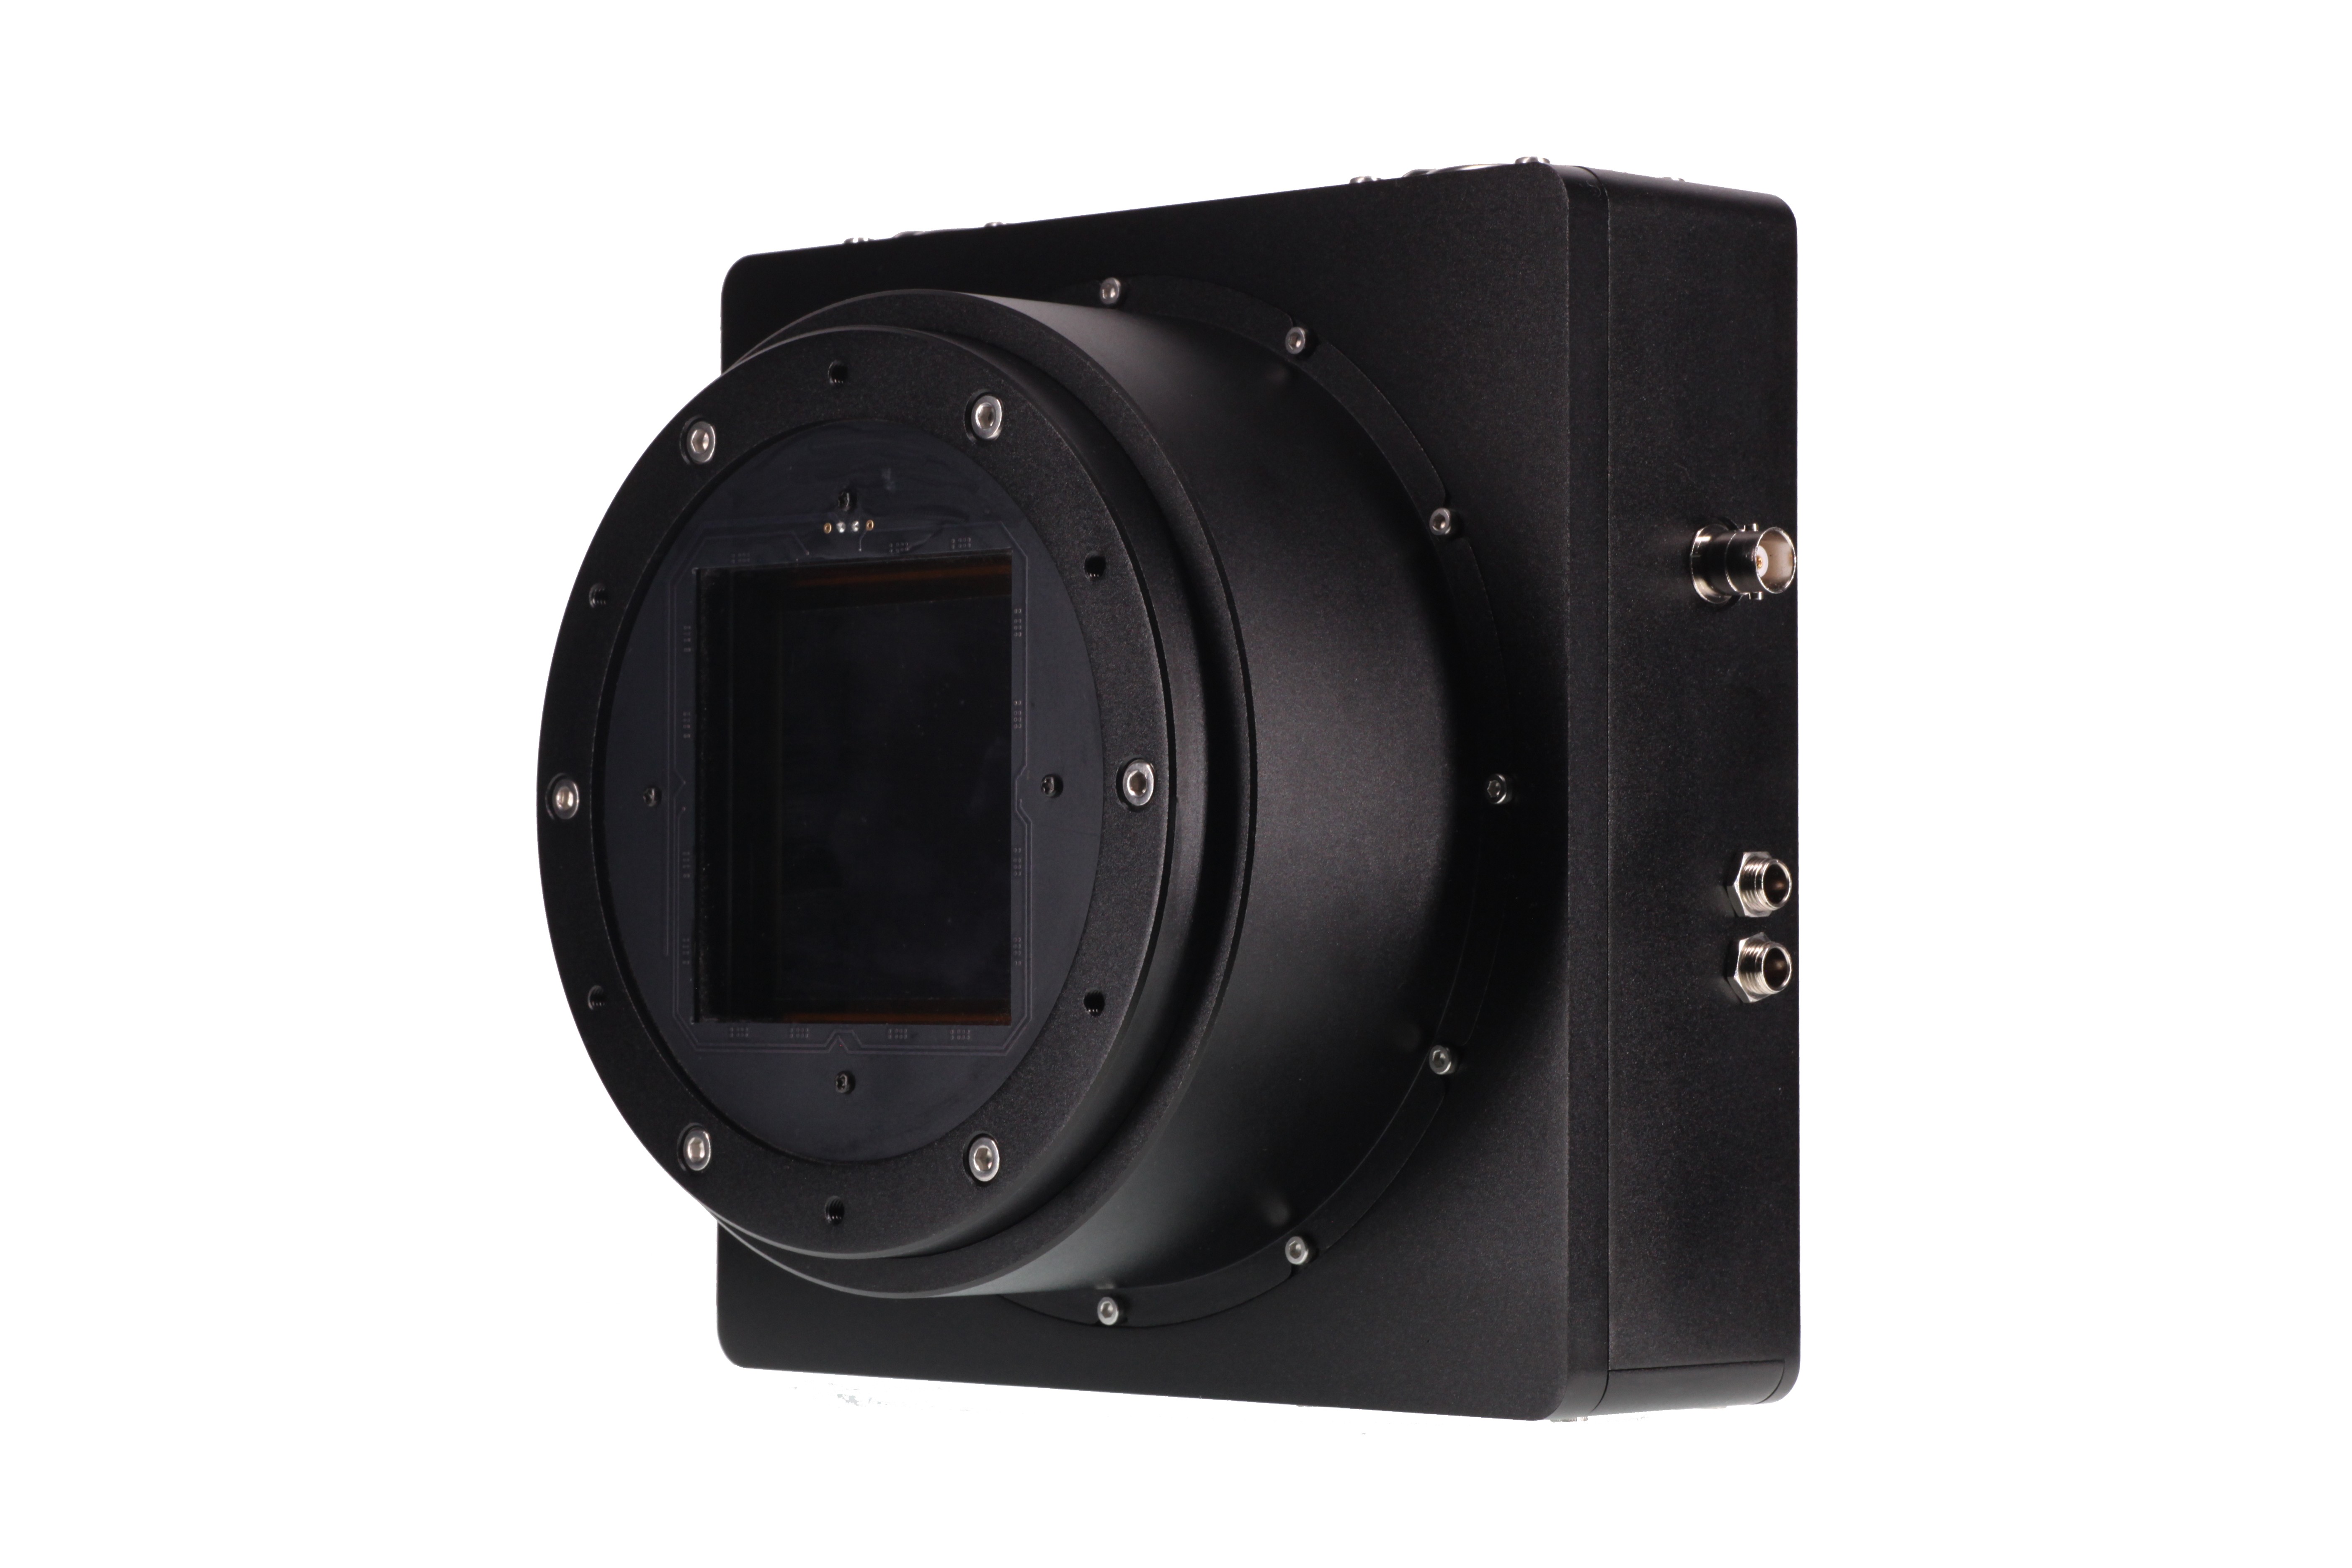 QHY 6060 BSI / FSI Cooled Scientific Kamera (verschiedene Versionen erhältlich)